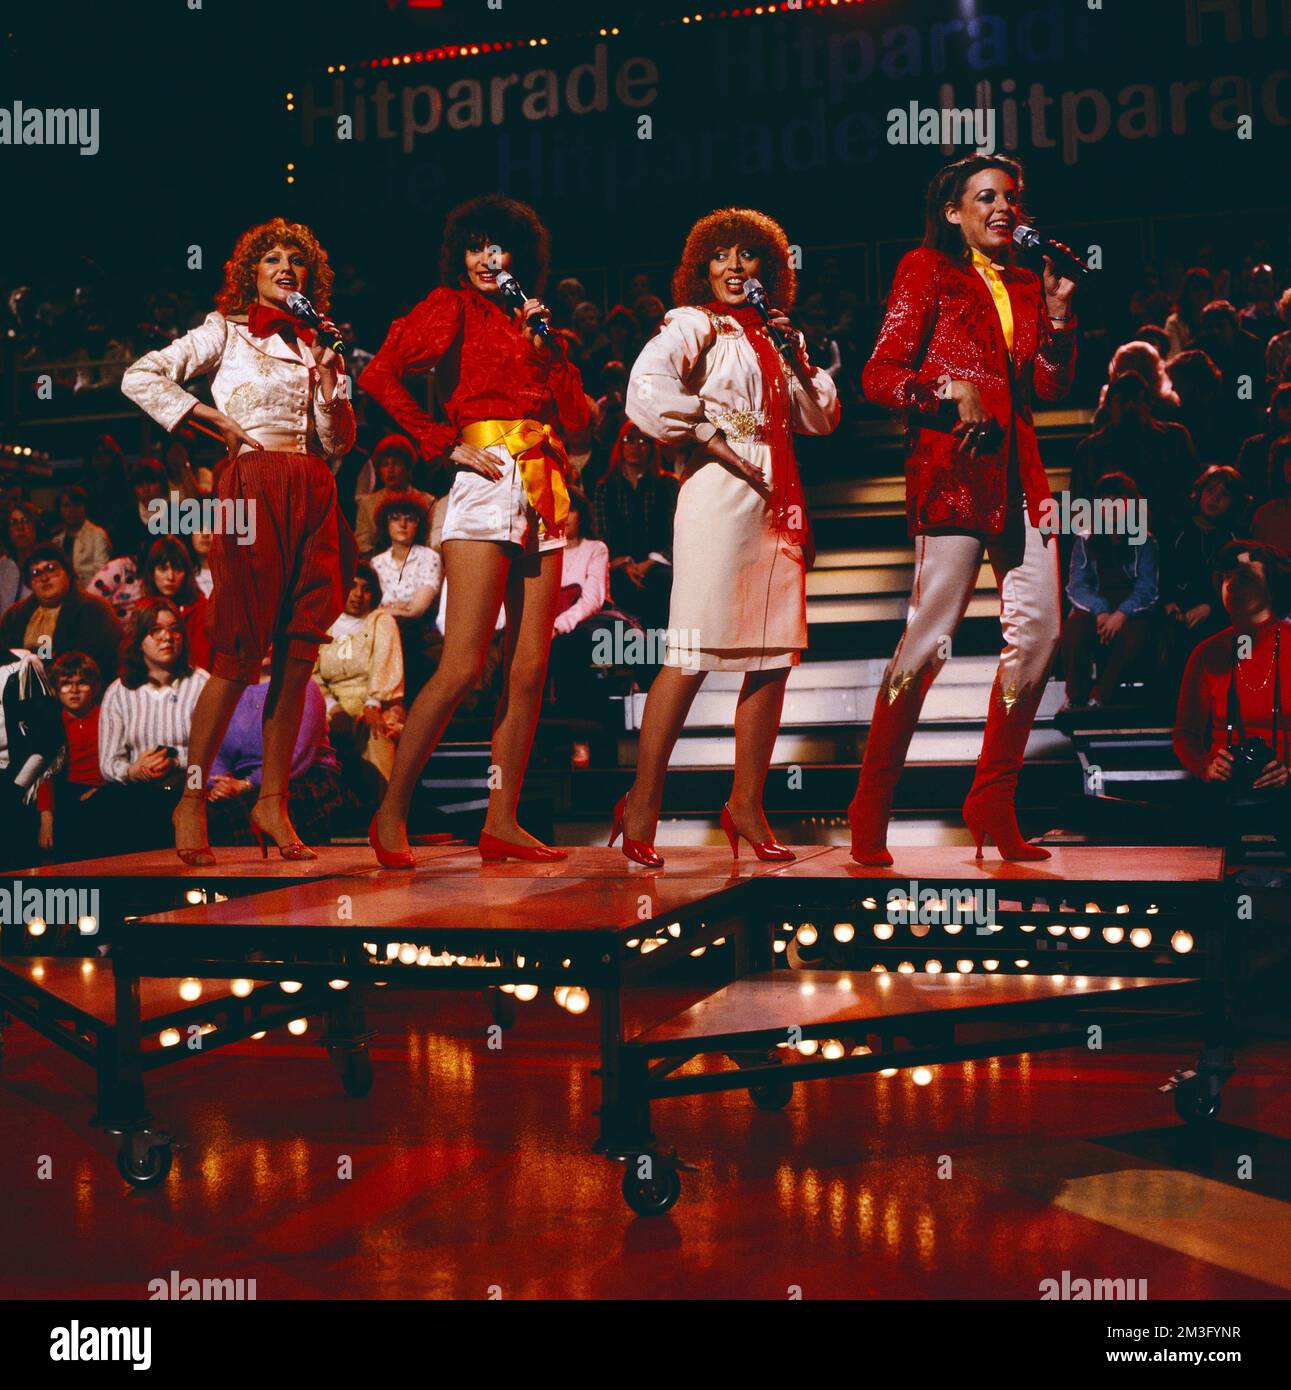 Hitparade, ZDF Musiksendung, Deutschland, 1981, Auftritt: The Hornettes, deutsche Pop Musik Gesangsgruppe. Hitparade, TV music show, Germany, 1981, performance of The Hornettes, German pop music vocal group. Stock Photo